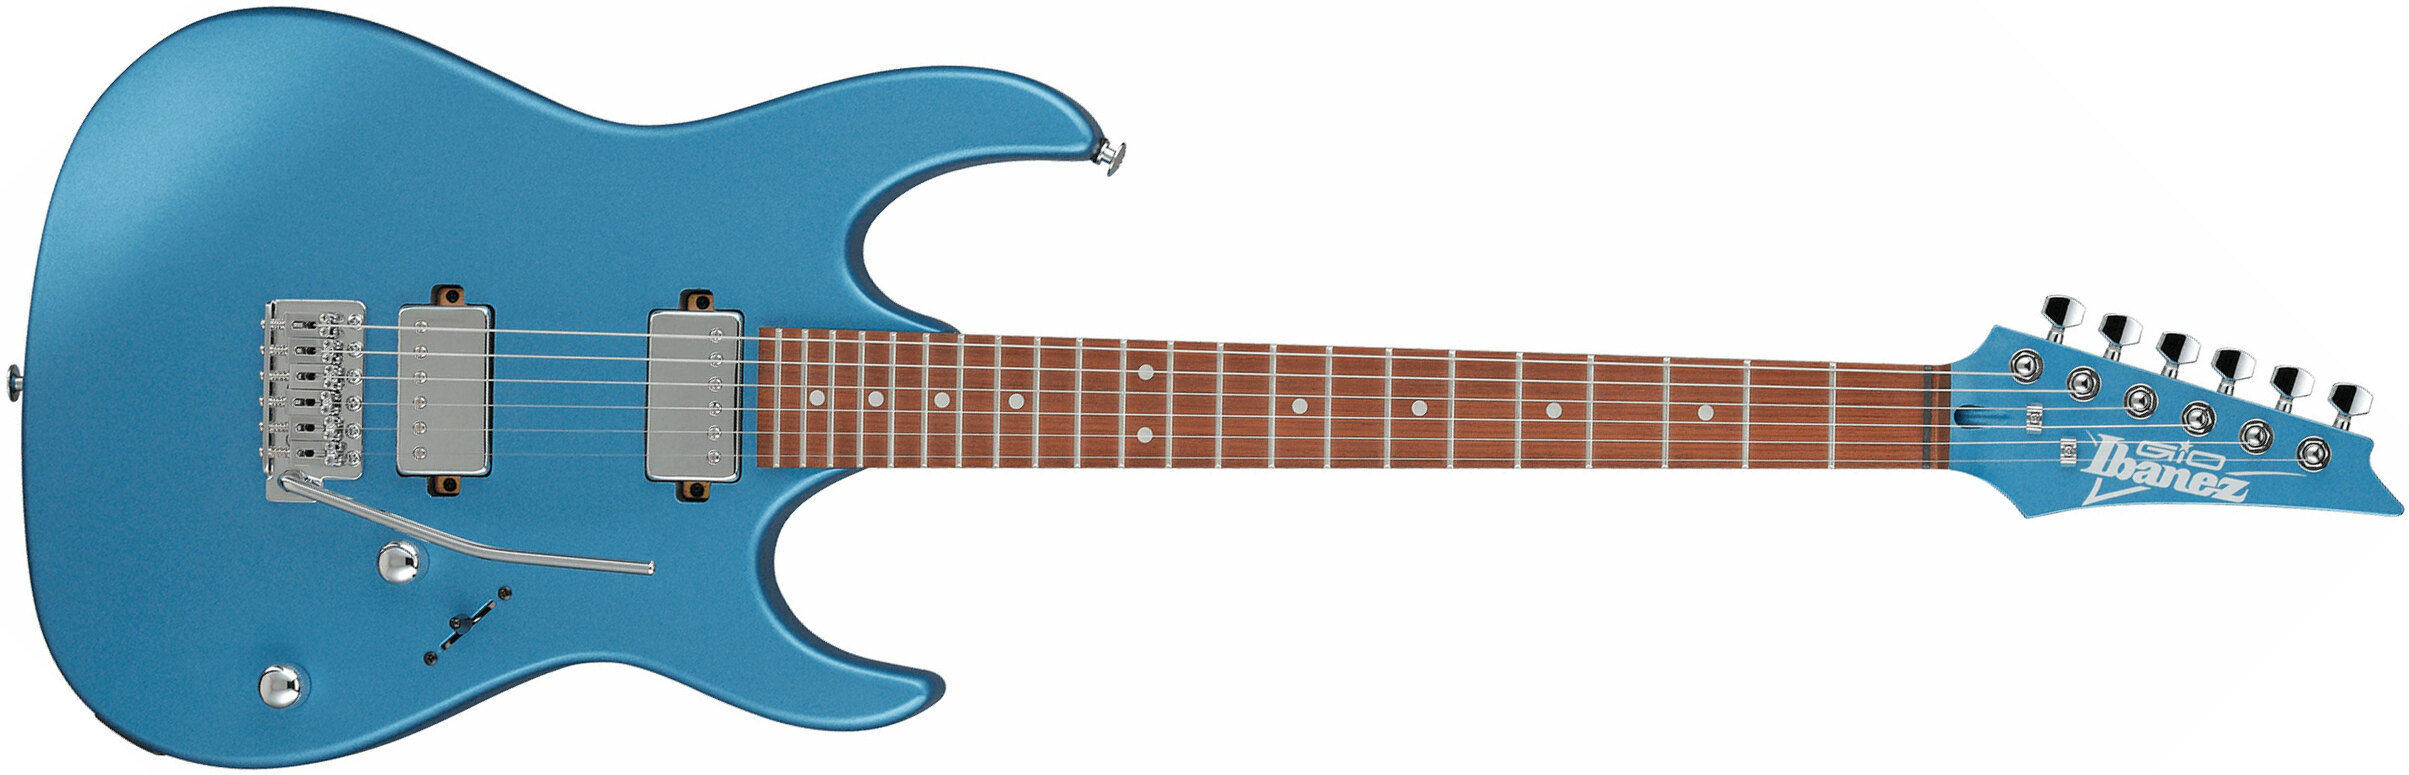 Ibanez Grx120sp Mlm Gio 2h Trem Jat - Metallic Light Blue Matte - Guitarra eléctrica con forma de str. - Main picture